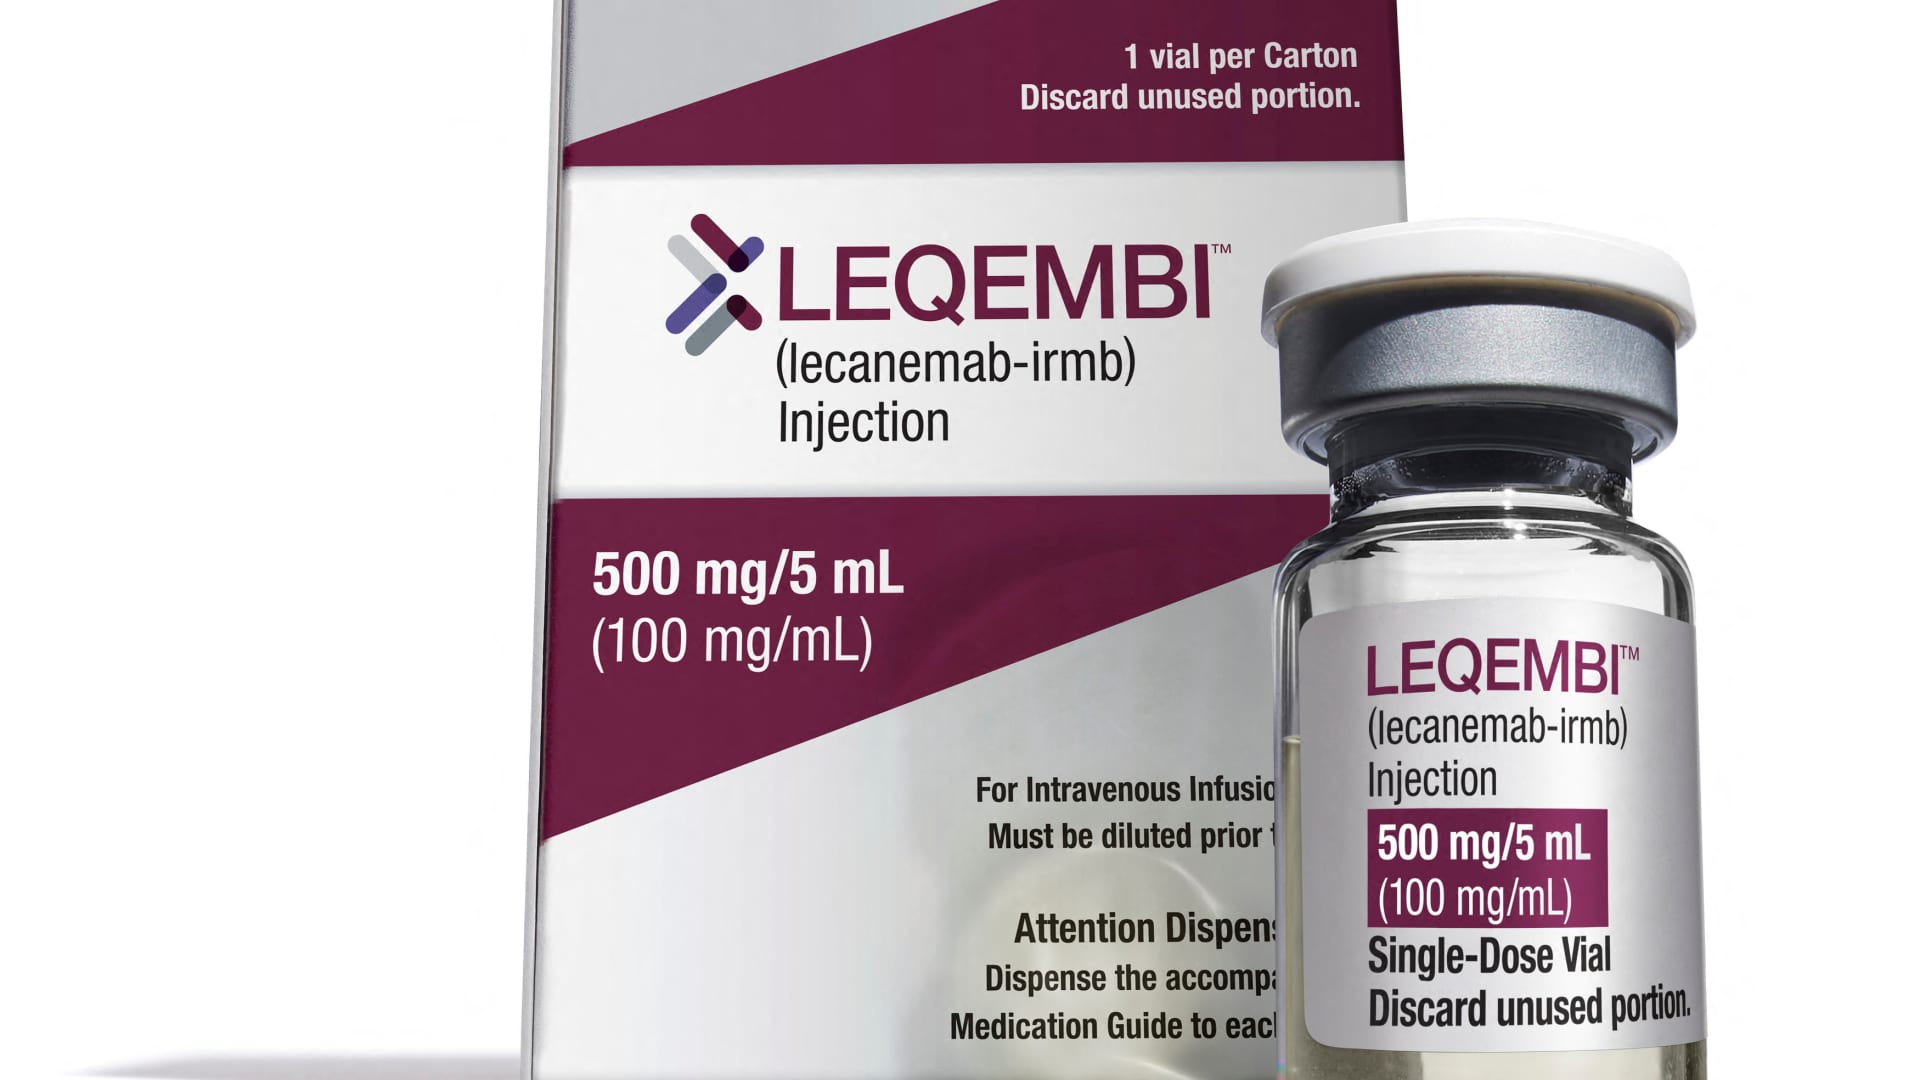 FDA approves Alzheimer’s drug Leqembi, paving way for broader Medicare coverage